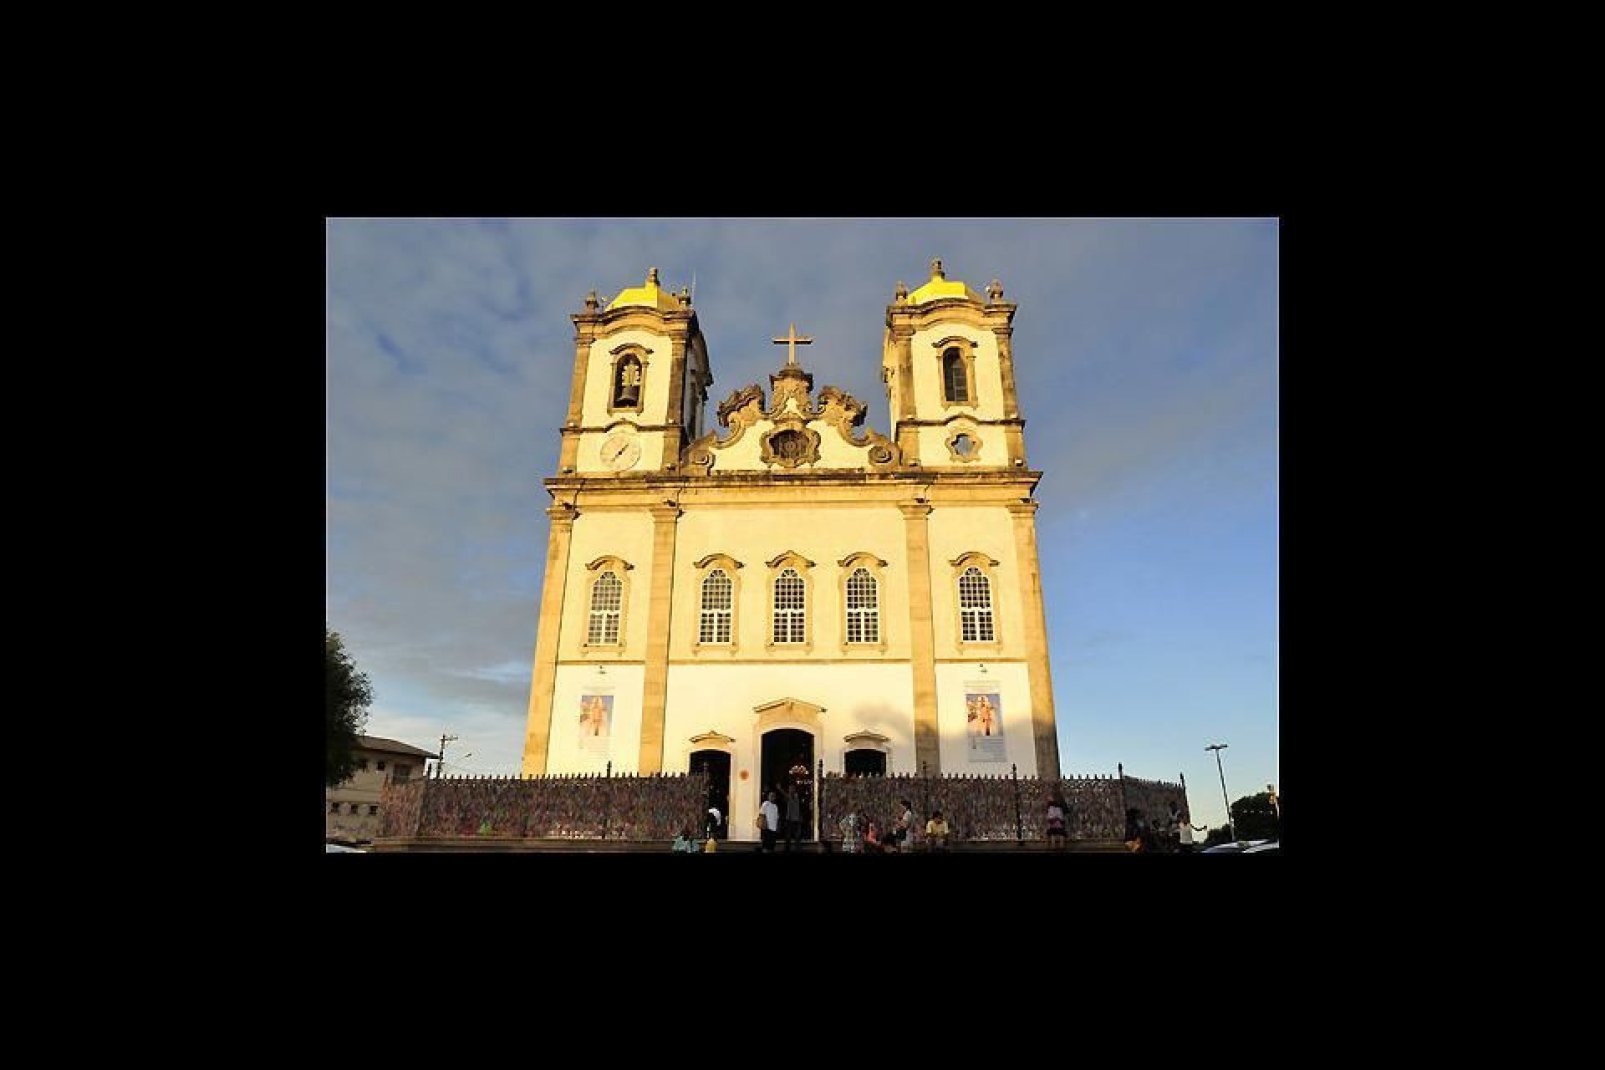 Die Kirche N-S do Bonfim ist eine der wichtigsten Glaubensstätten Brasiliens, hier werden auch die berühmten Glücksbringerbändchen in allen Farben feilgeboten.